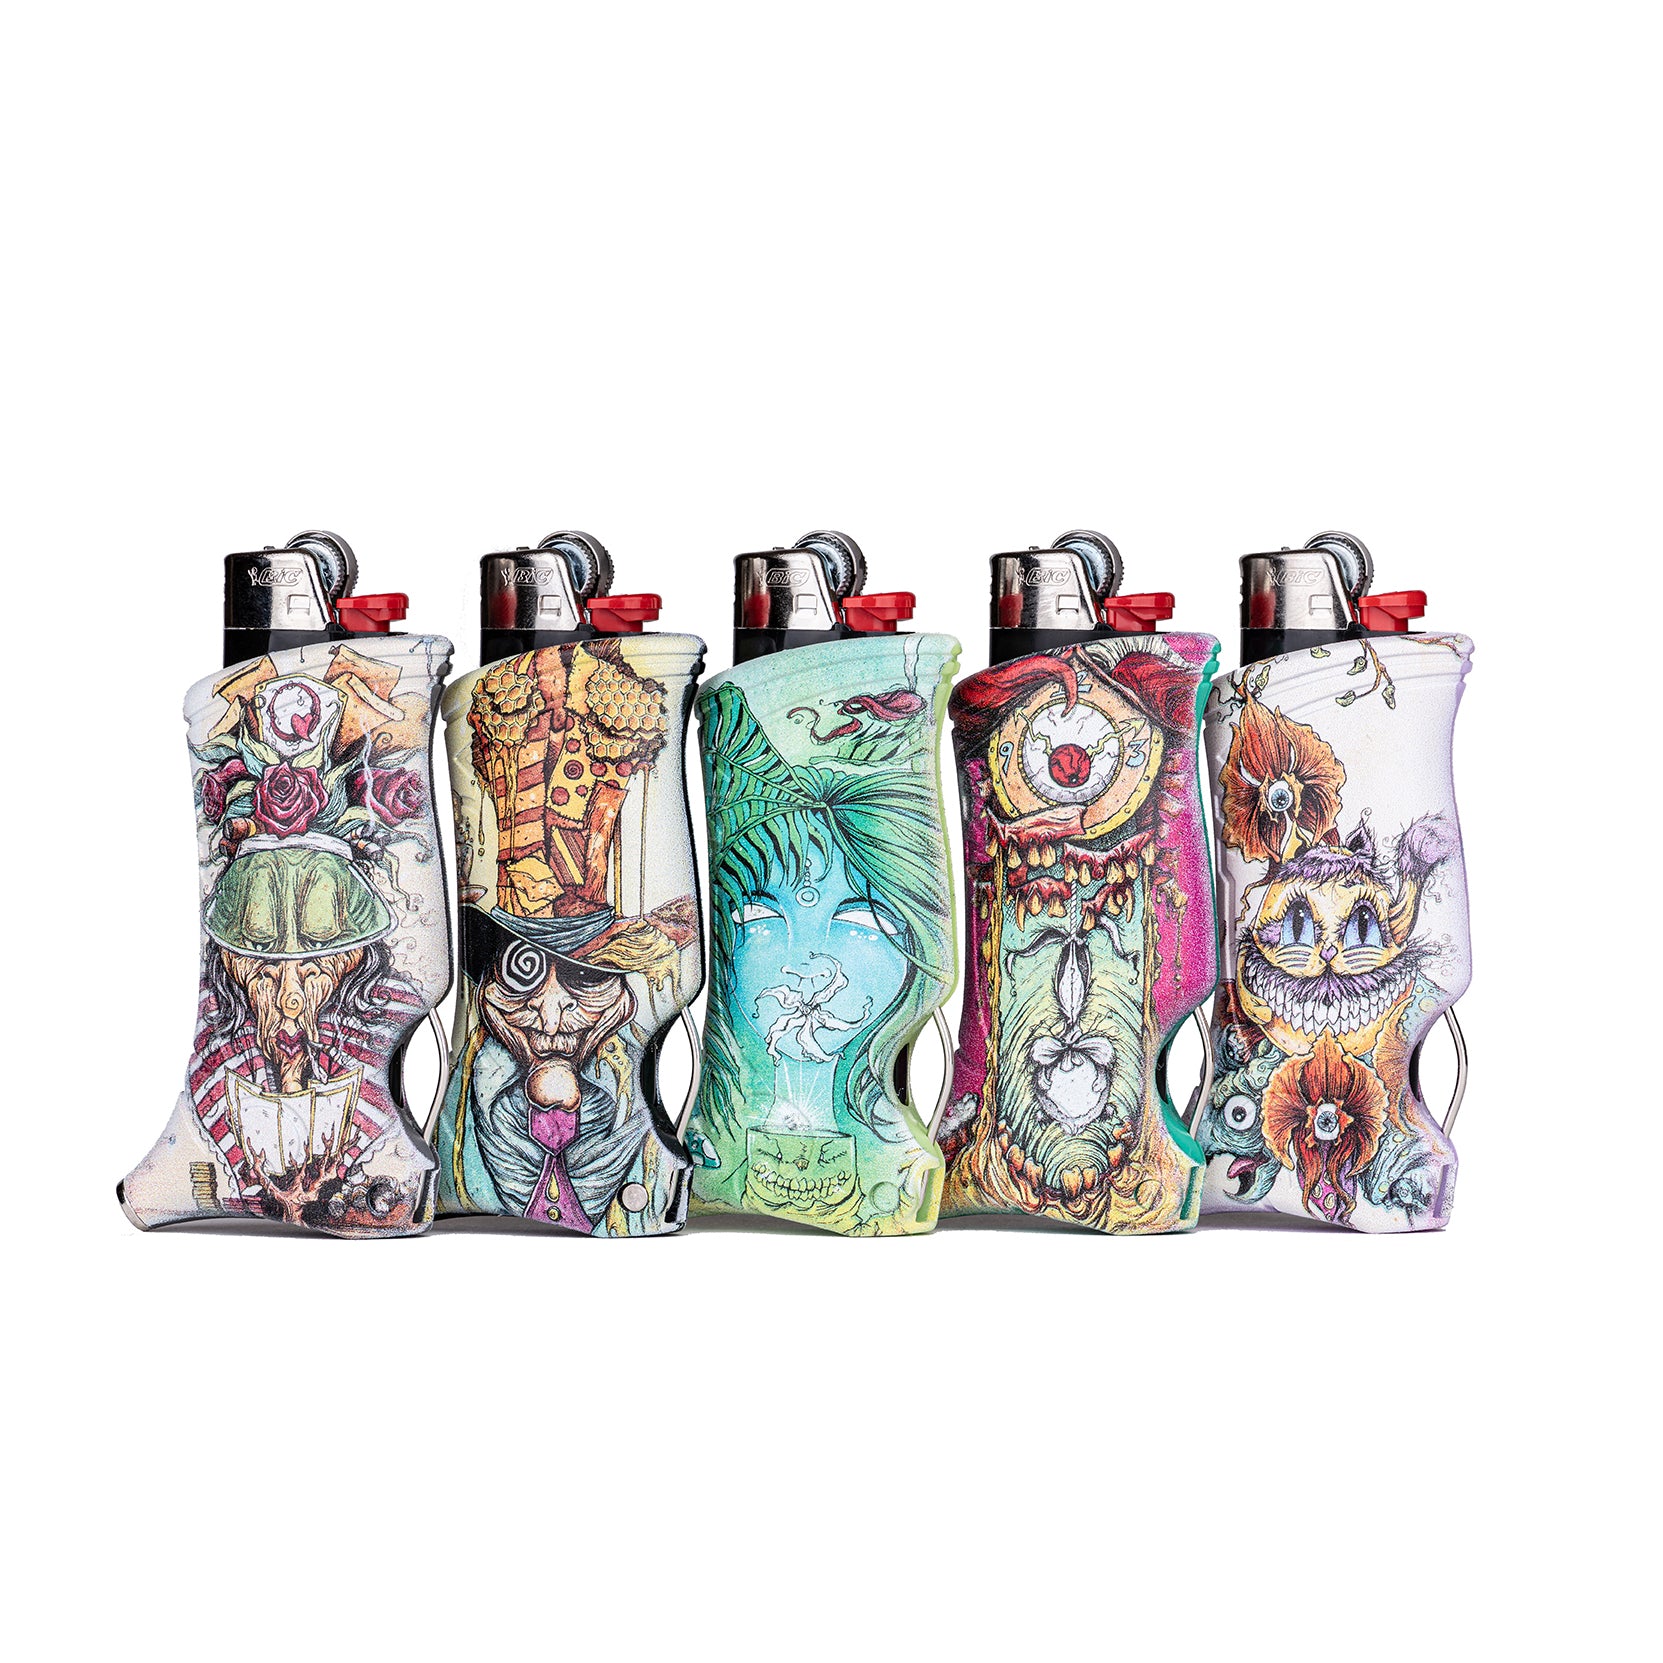 Toker Poker Lighter Multi-Tool Alice in Wonderland Series (25x Pack) -  Magma Holding Inc